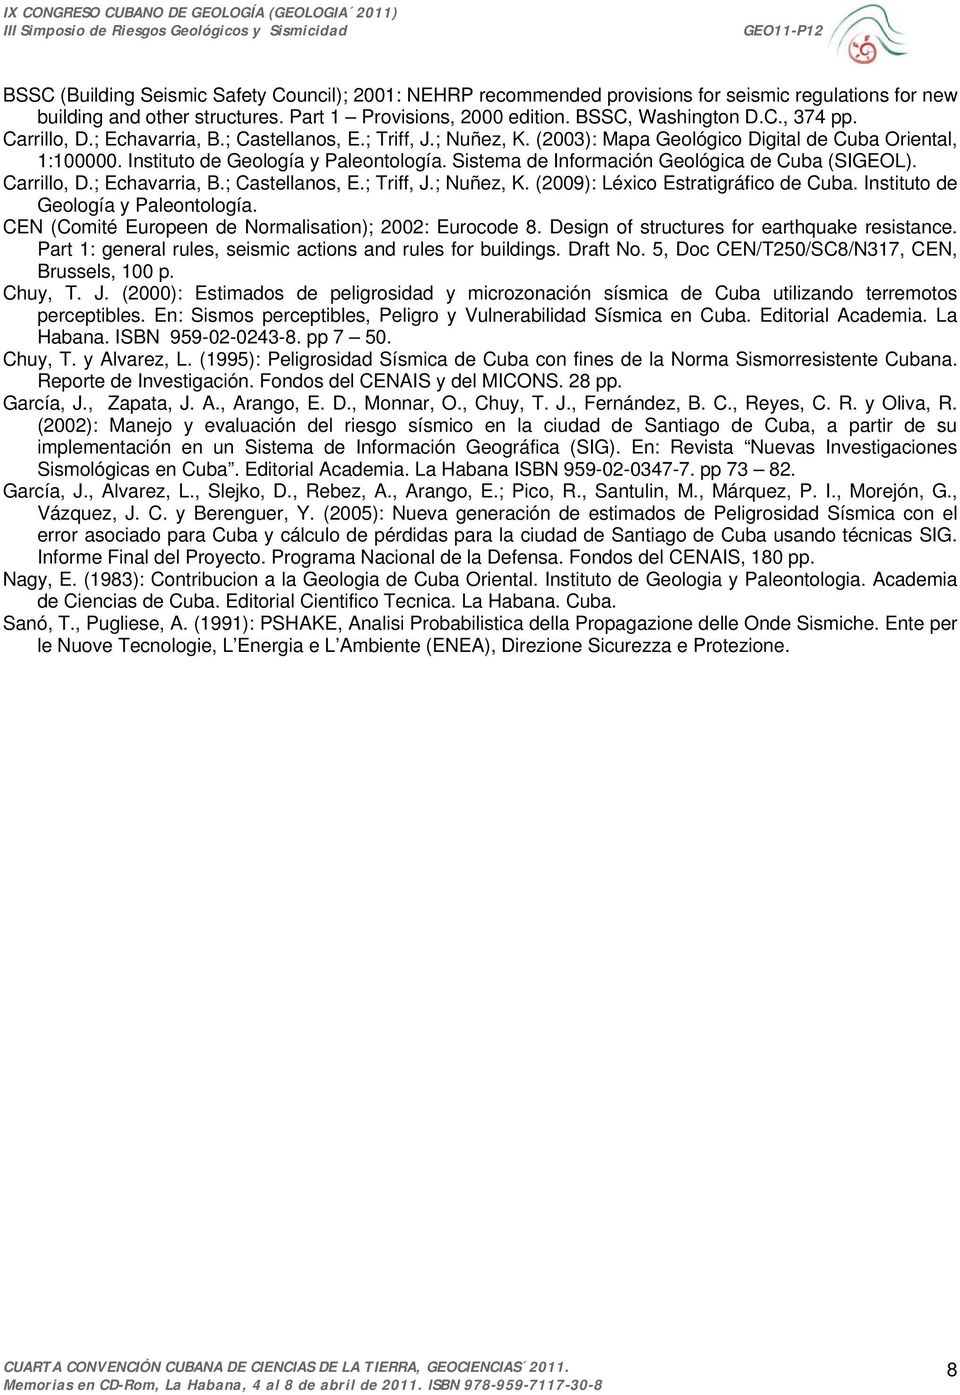 Sistema de Información Geológica de Cuba (SIGEOL). Carrillo, D.; Echavarria, B.; Castellanos, E.; Triff, J.; Nuñez, K. (2009): Léxico Estratigráfico de Cuba. Instituto de Geología y Paleontología.